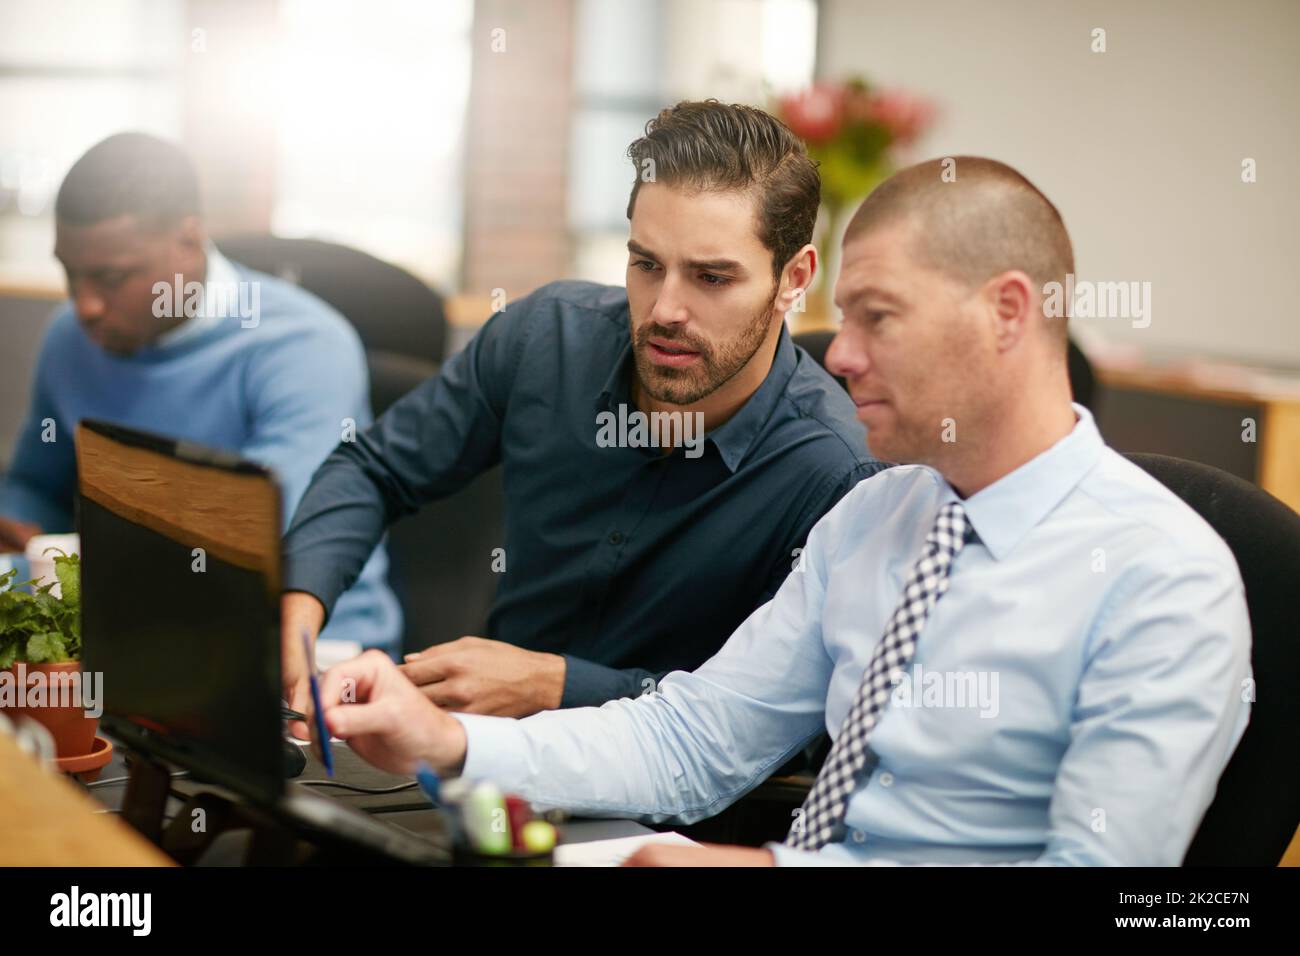 HES sempre disponibile ad aiutare. Scatto ritagliato di tre uomini d'affari che lavorano in ufficio. Foto Stock